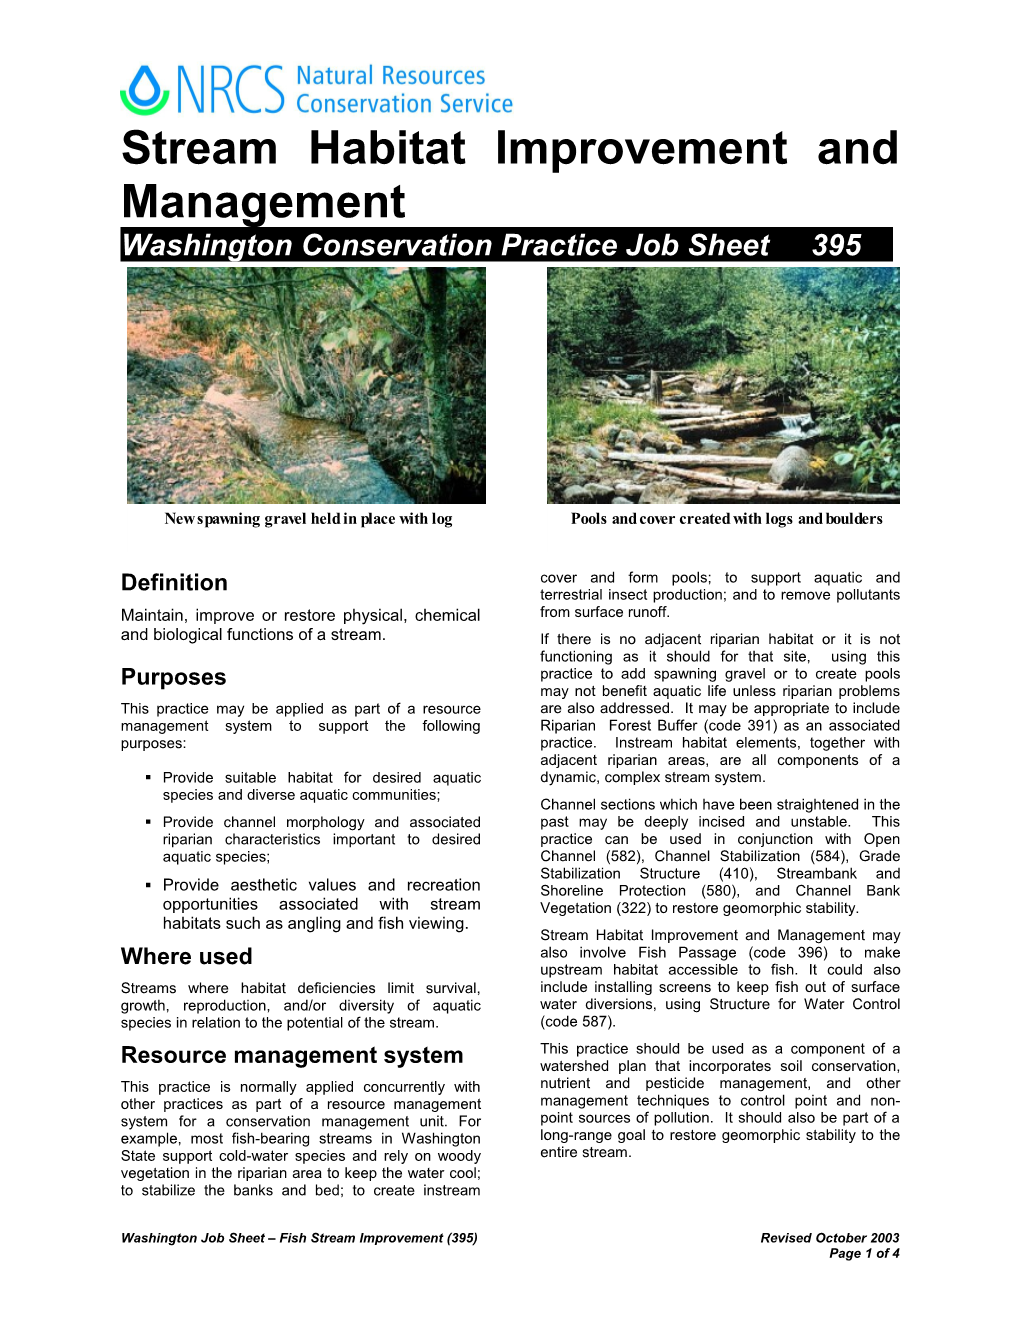 Stream Habitat Improvement and Management